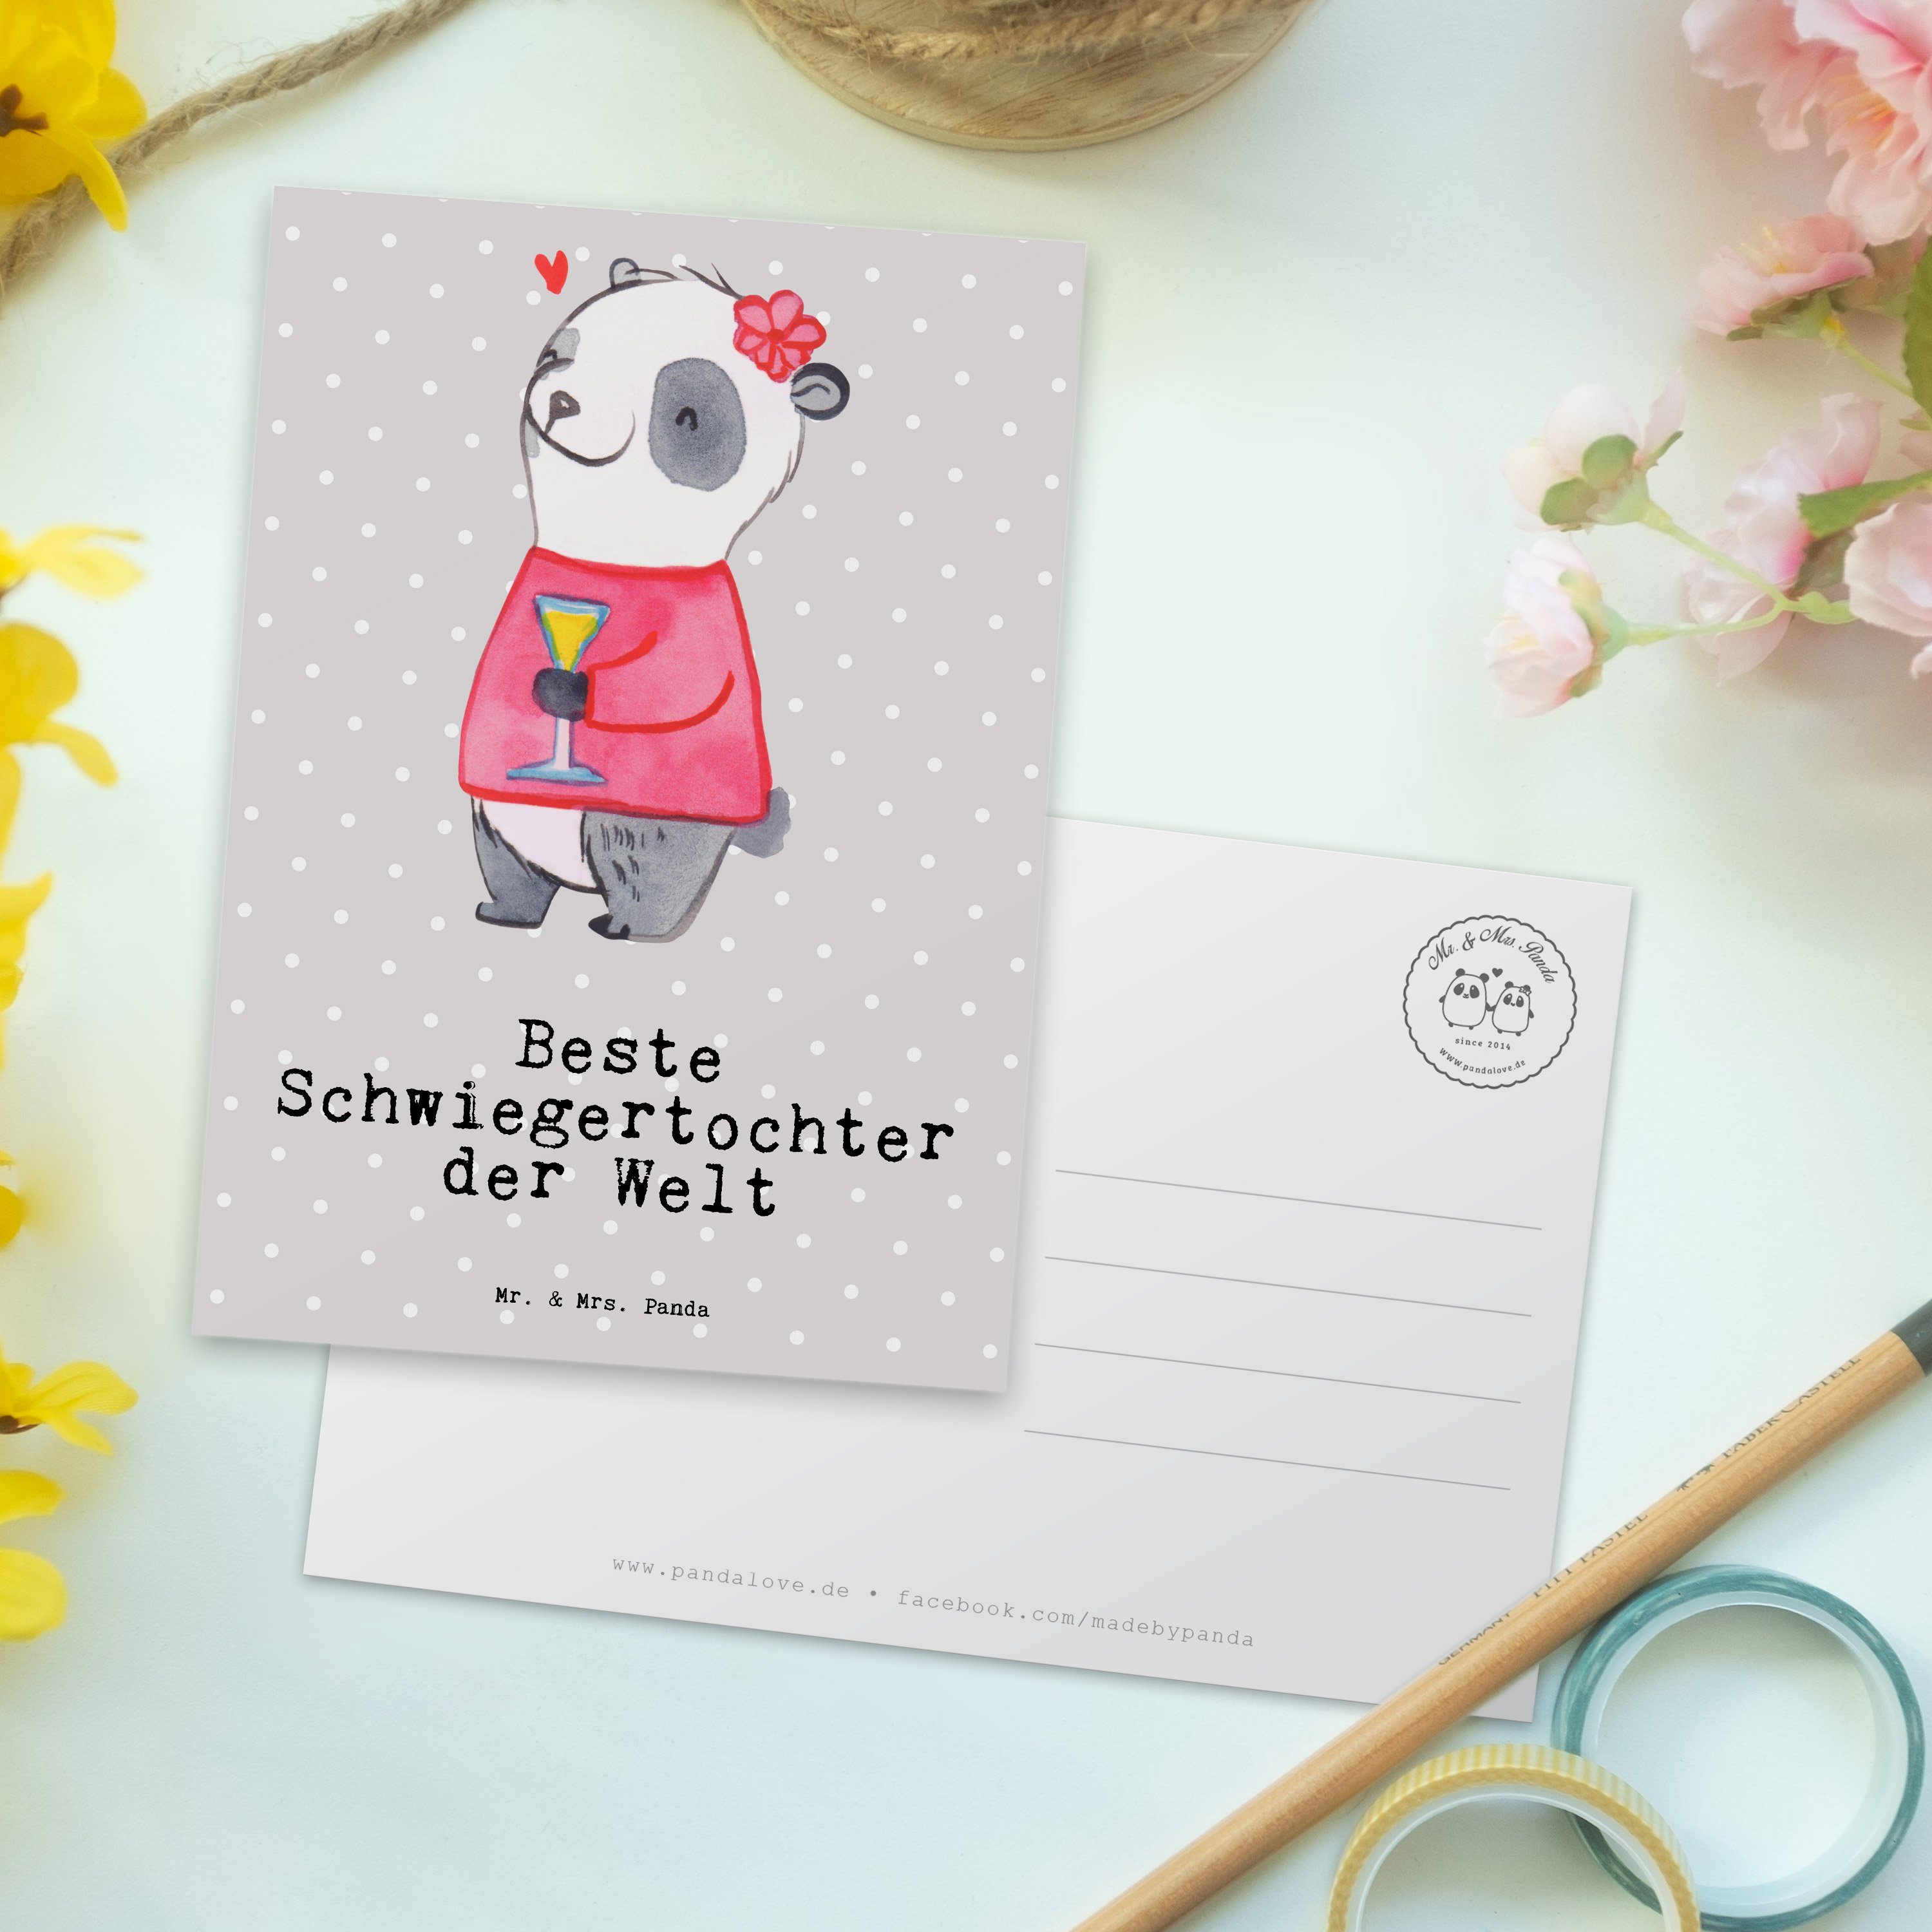 Schwiegertochter Panda Beste Panda - Dank Geschenk, Welt Postkarte Grau Pastell Mrs. - & der Mr.